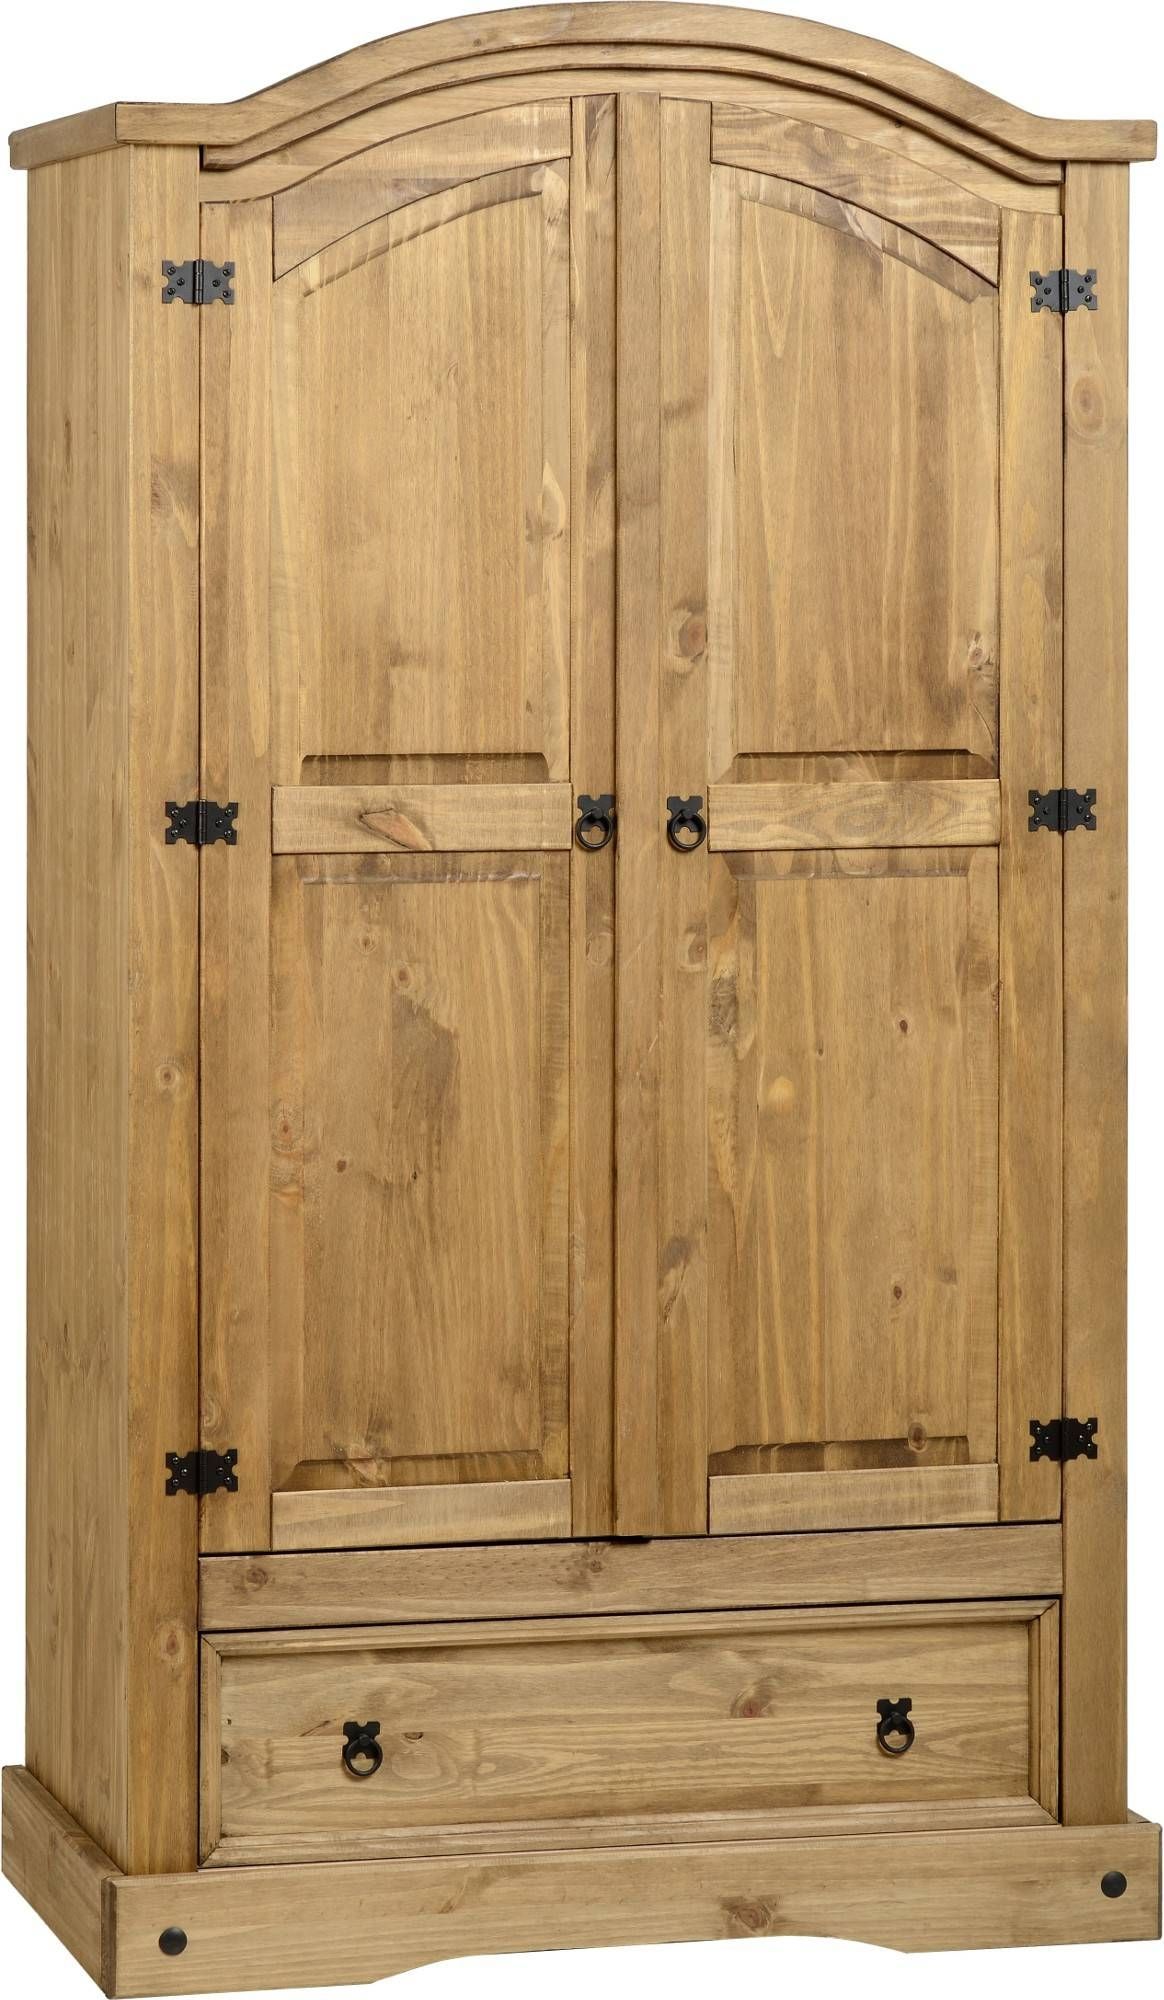 Corona Pine 2 Door Wardrobe With Drawer – Default Store View With Pine Wardrobes With Drawers (View 5 of 15)